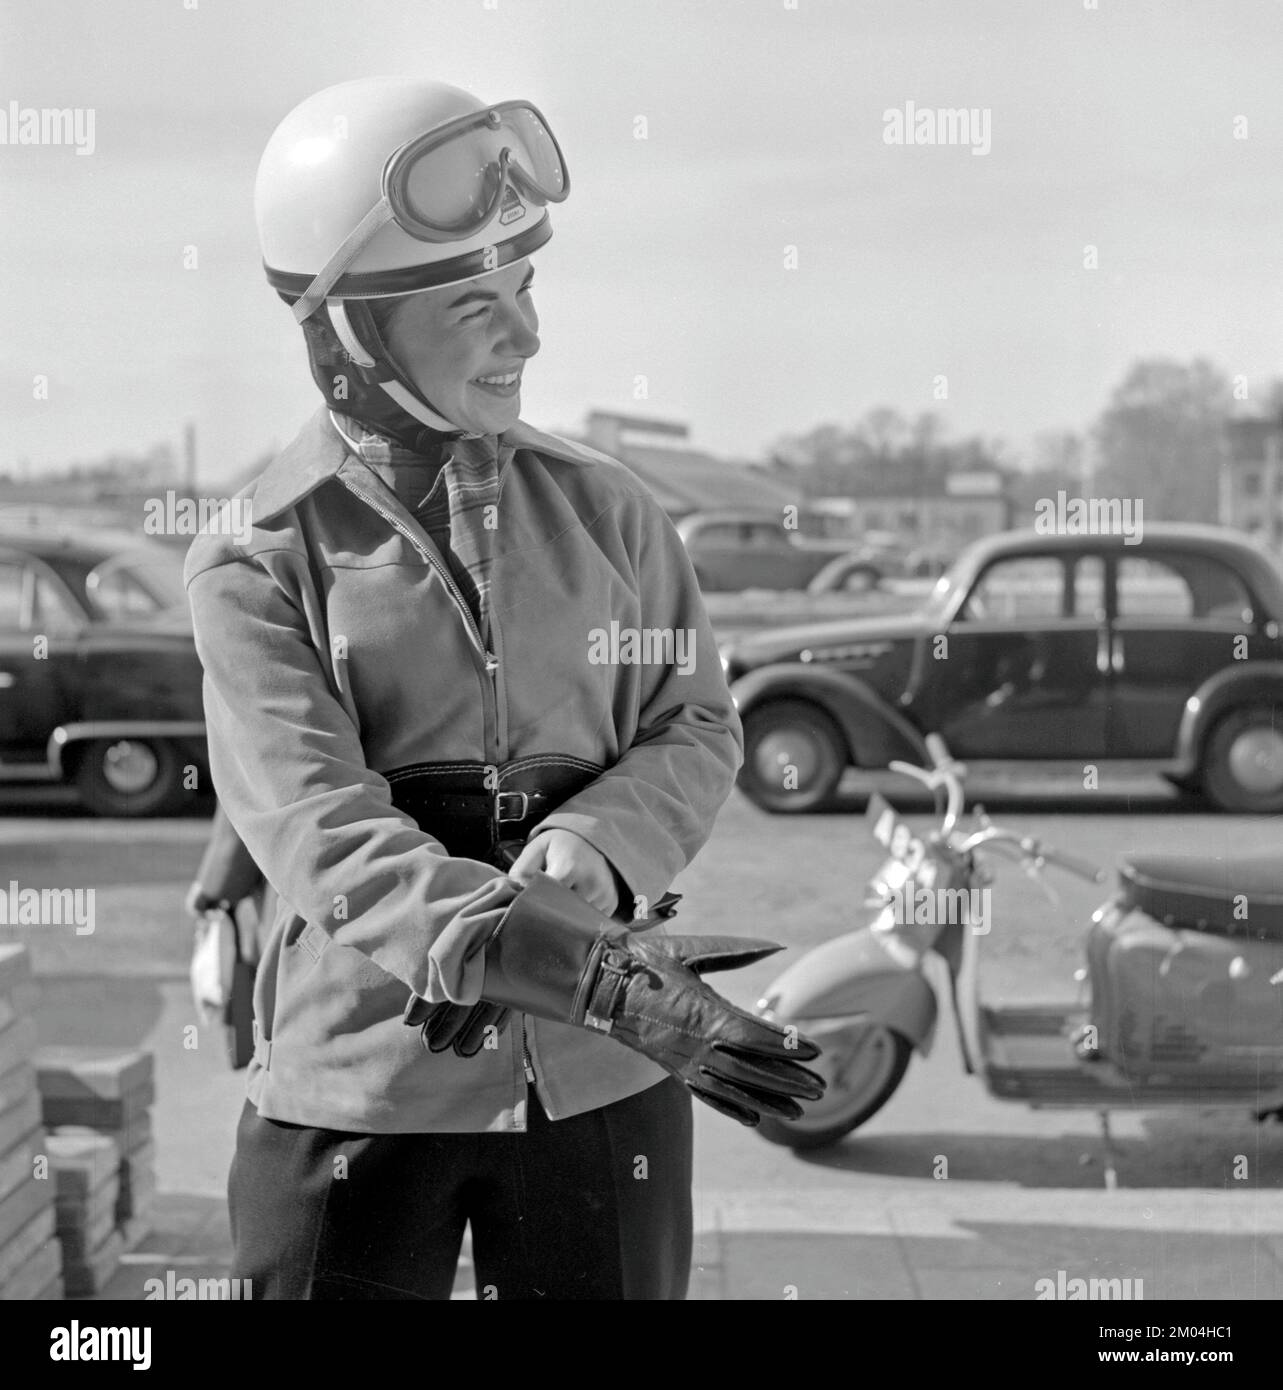 Negli anni '1950s. Una giovane donna vista su uno scooter Puch di origine tedesca. L'autista femminile indossa i tipici abiti e accessori per motociclette del decennio, casco, giacca, cintura renale e guanti. Svezia 1955 Foto Stock